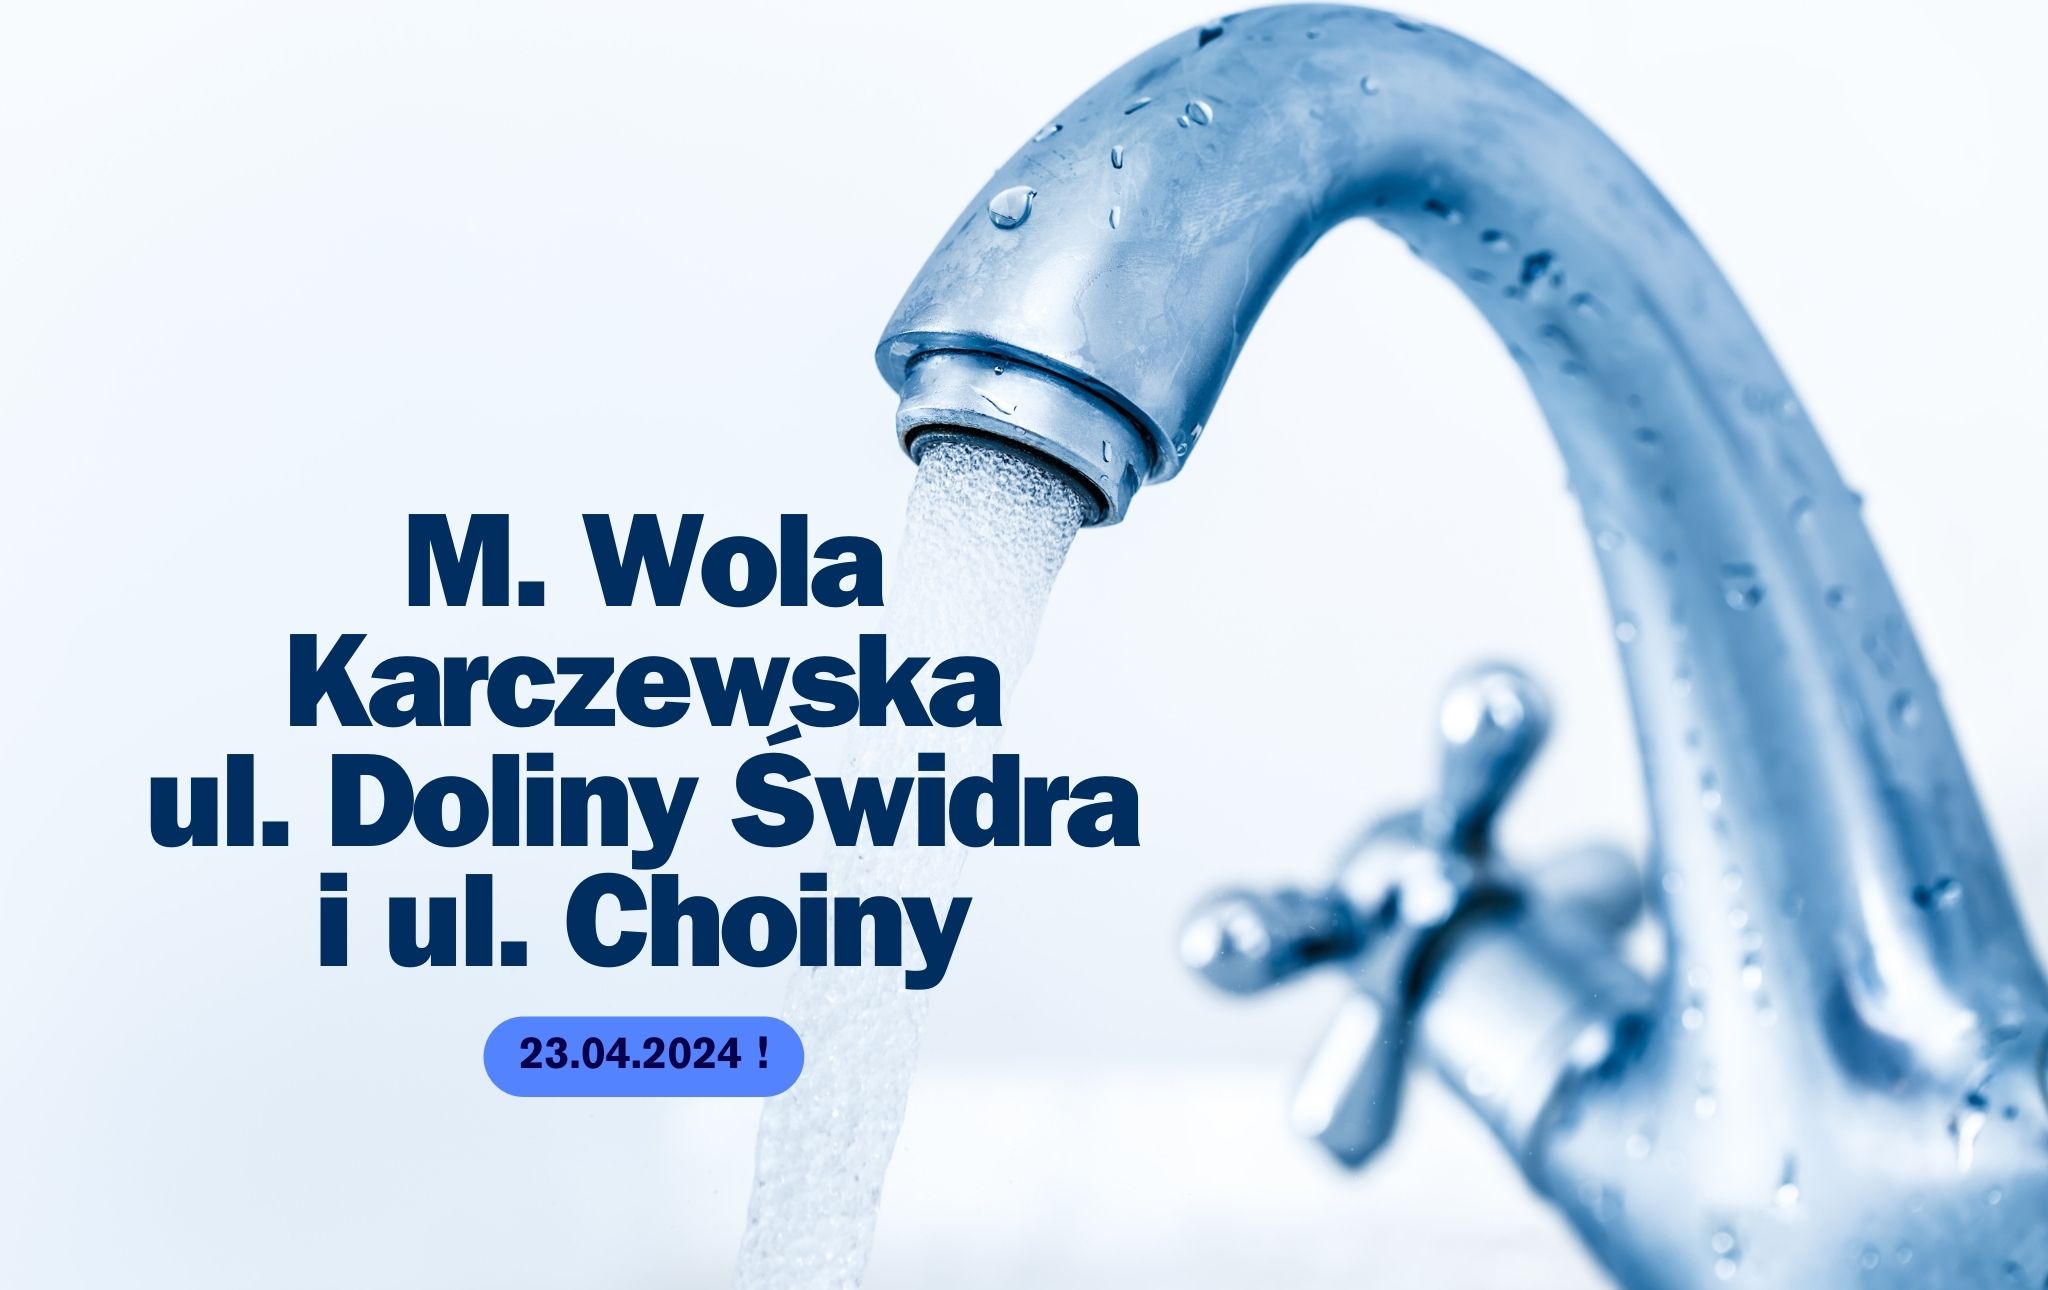 Wola Karczewska – wstrzymanie dostawy wody!